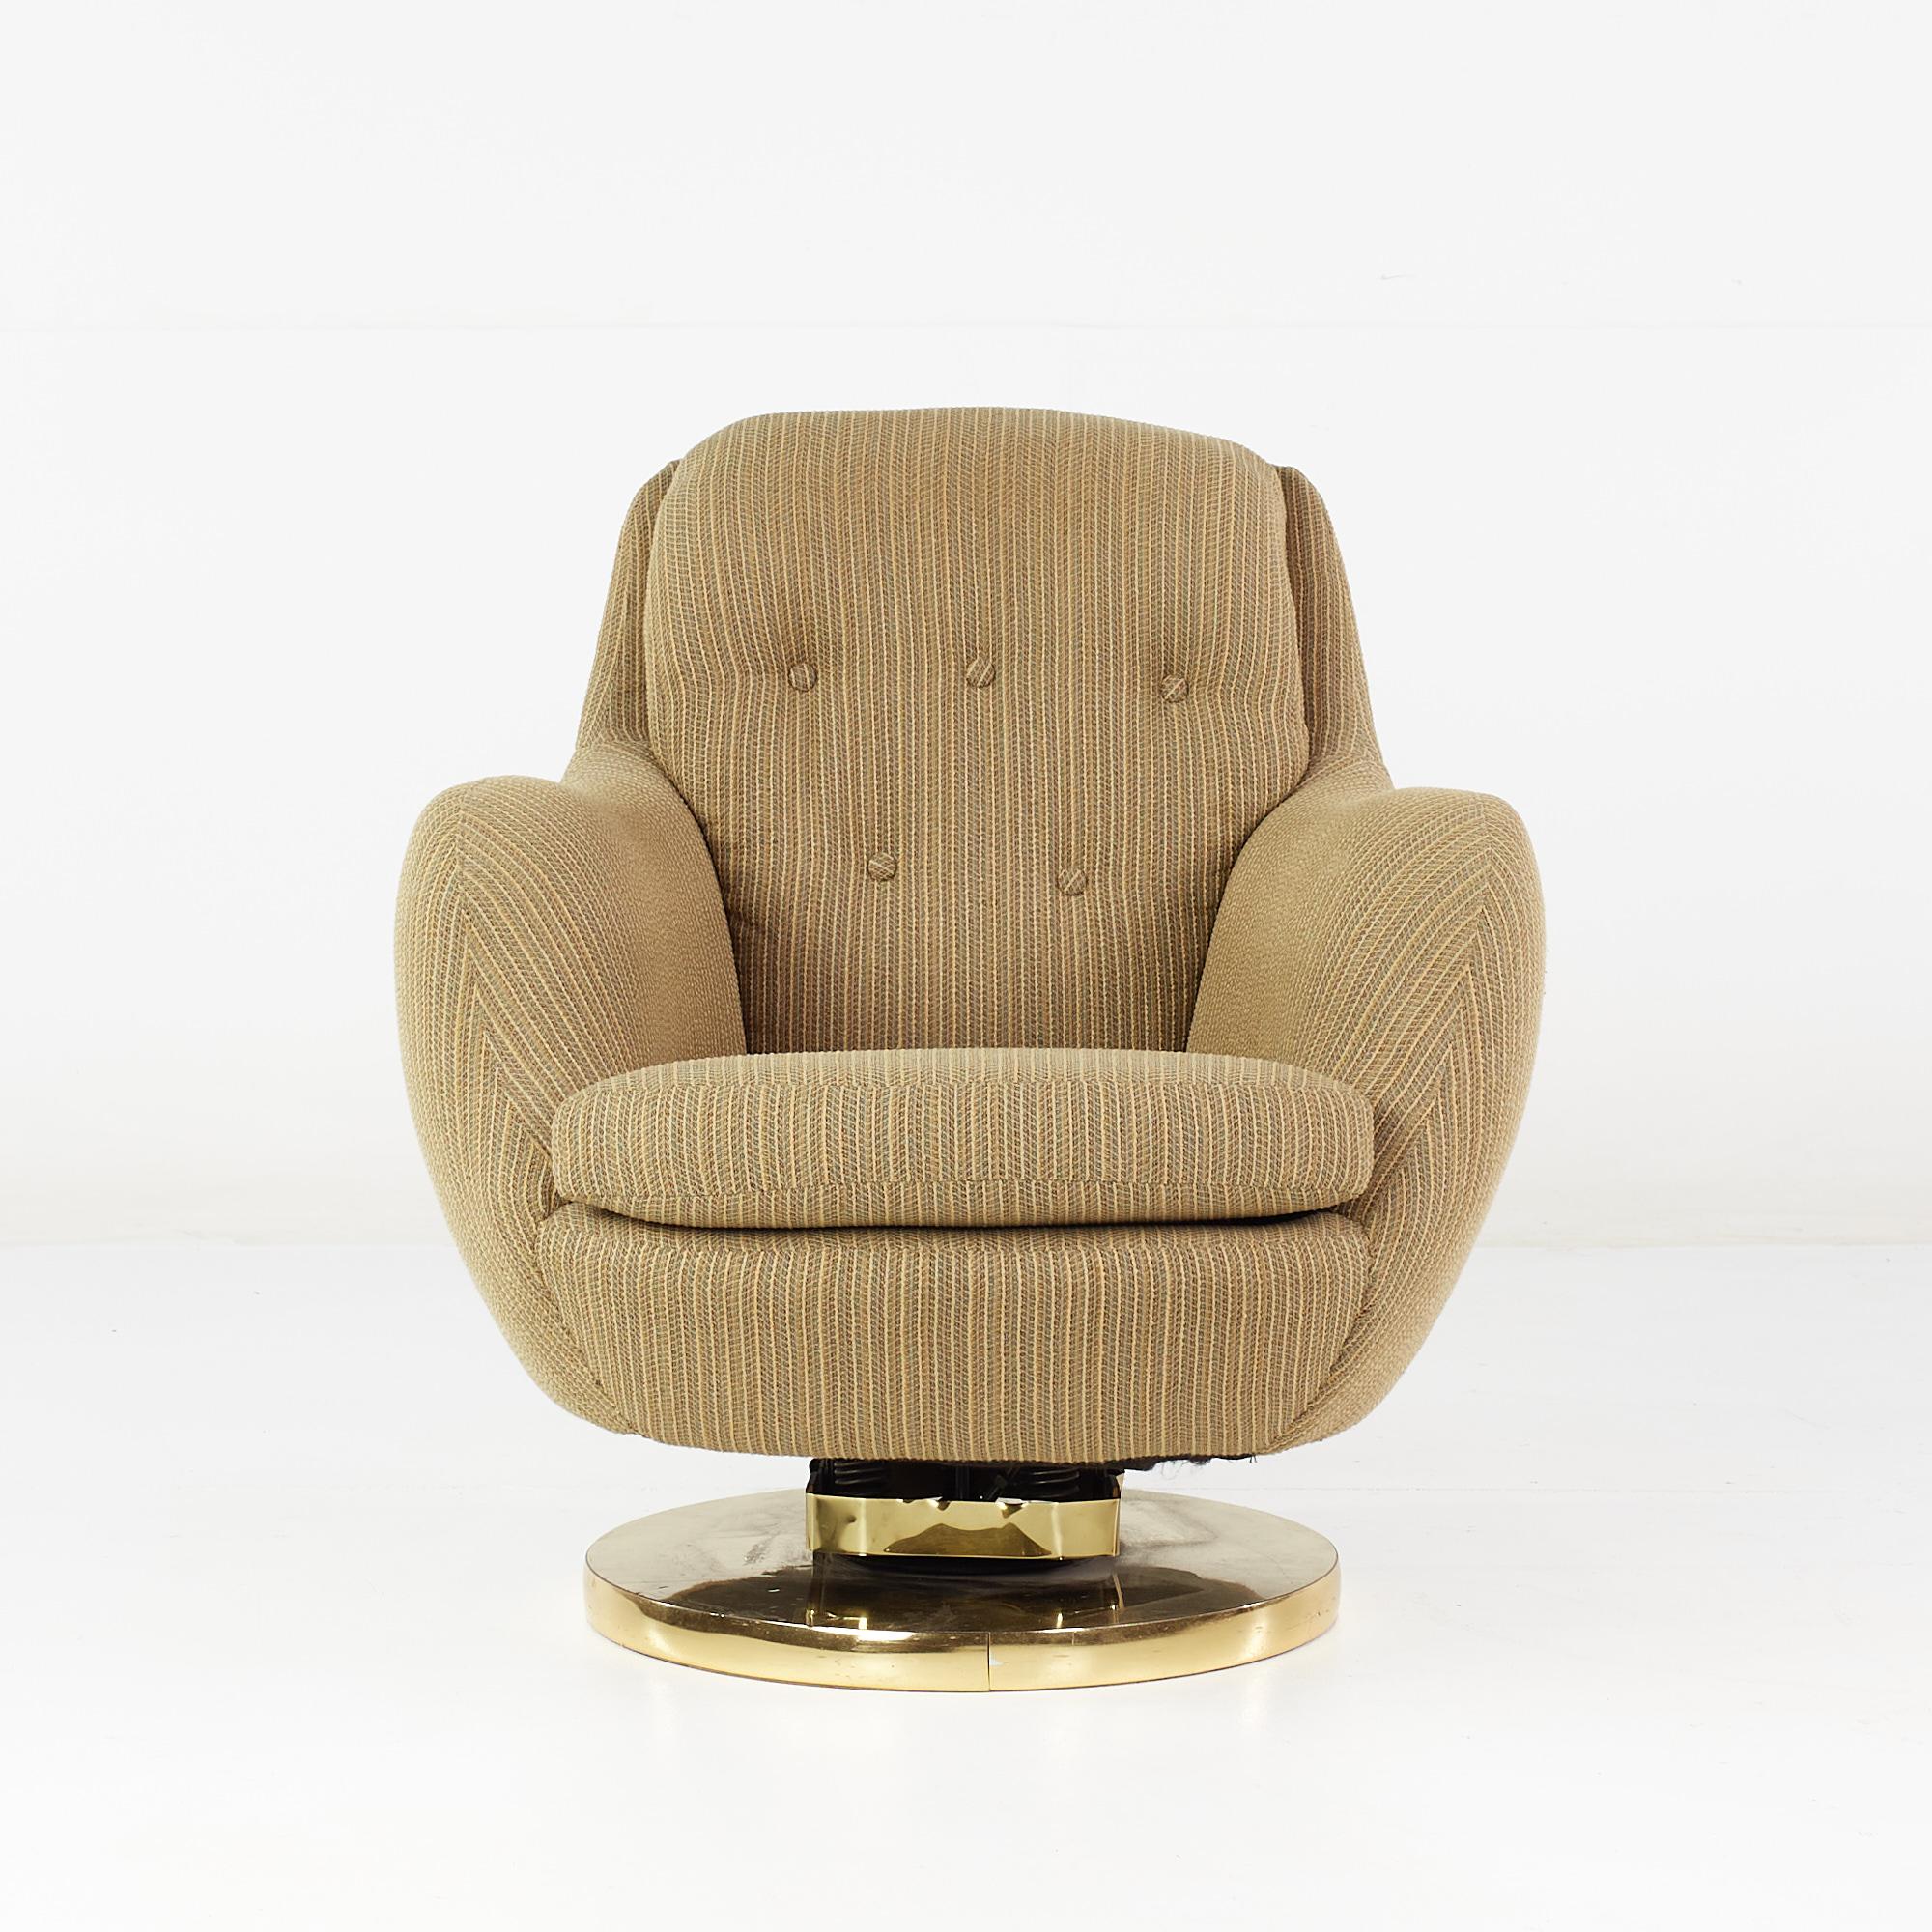 Milo Baughman Style Mid Century Brass Swivel Base Lounge Chair

Ce fauteuil mesure : 30 pouces de largeur x 33 pouces de profondeur x 32 pouces de hauteur, avec une hauteur d'assise de 16,5 pouces et une hauteur d'accoudoir/de dégagement de 23